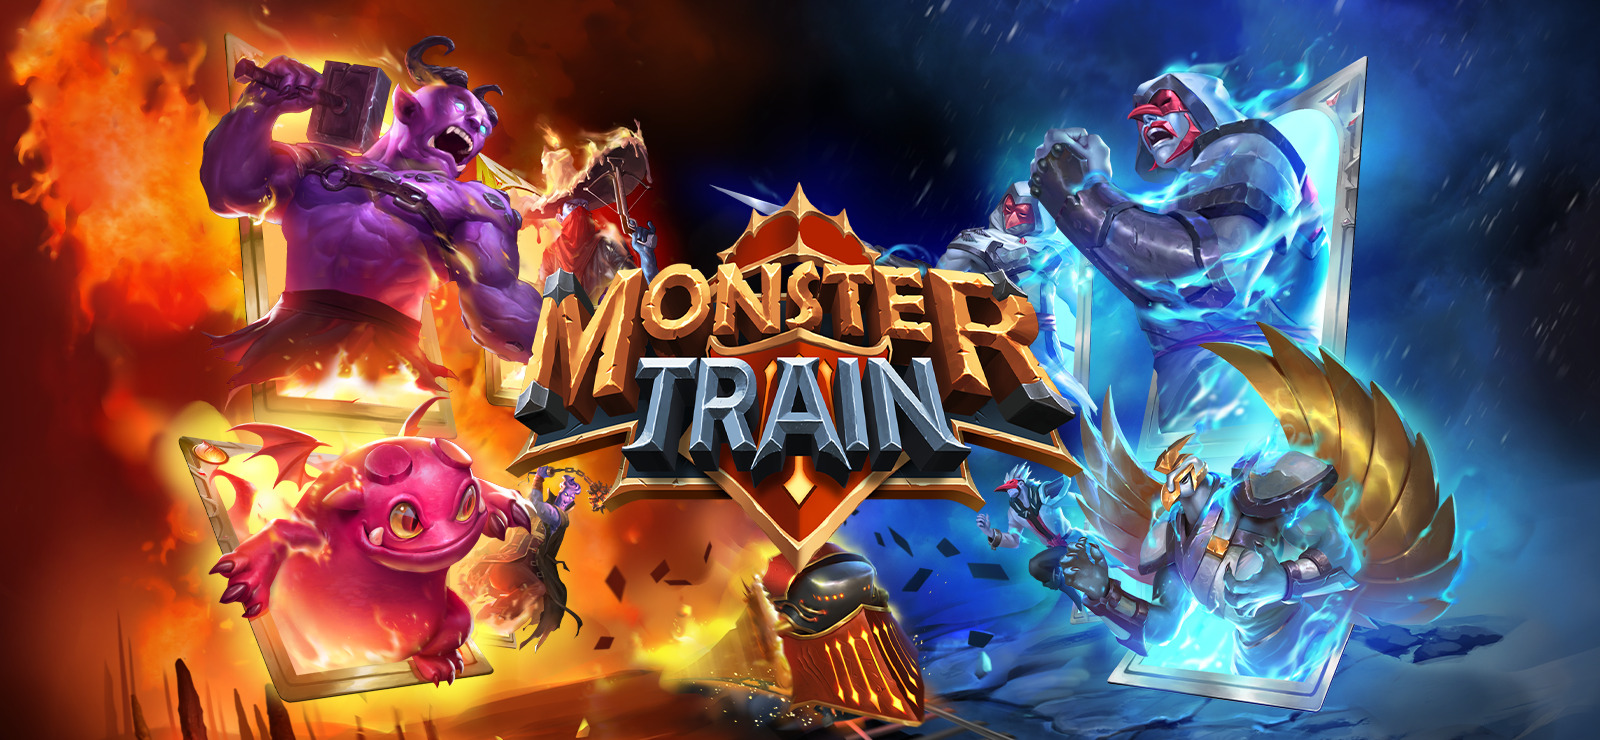 Monster Train on 